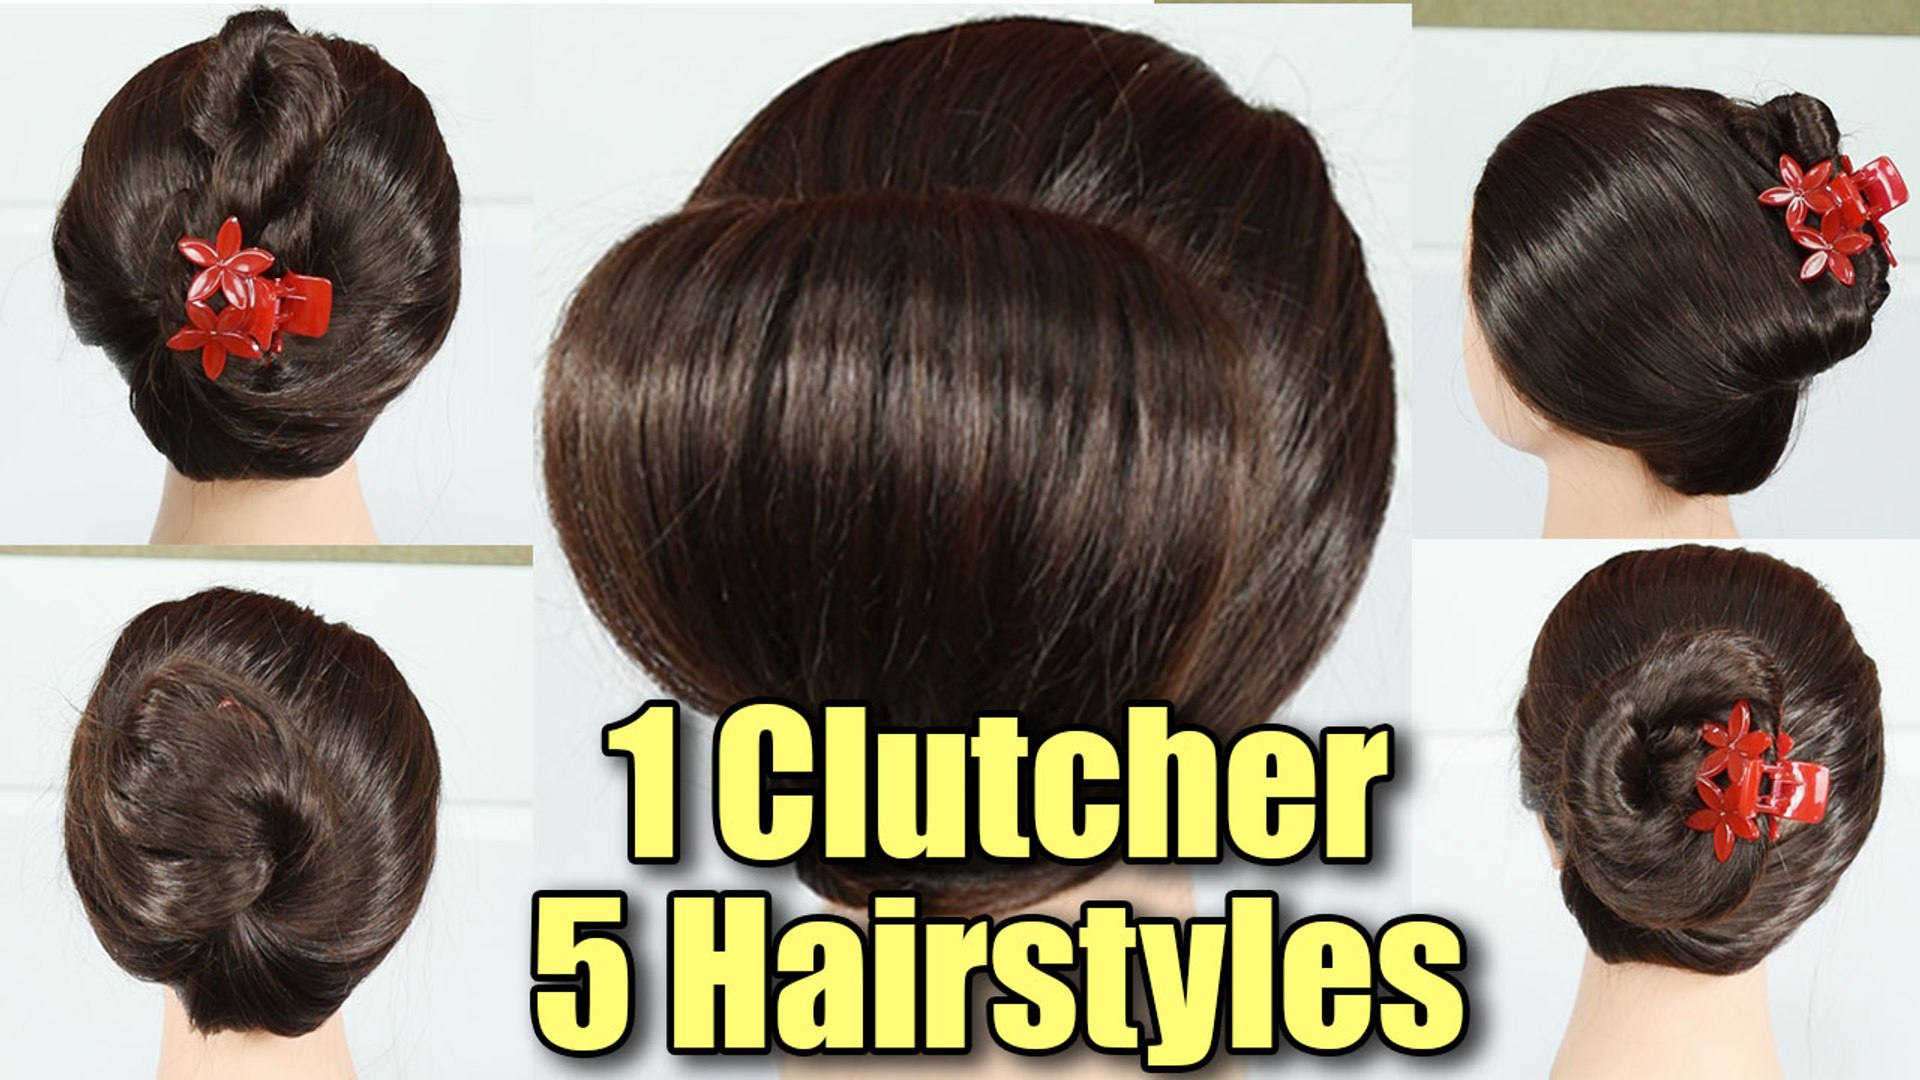 Hairstyle Tutorial: 1 Clutcher, 5 Hairstyles | सिर्फ कलचर से ट्राई करें ये  हेयरस्टाइल | Boldsky - video Dailymotion